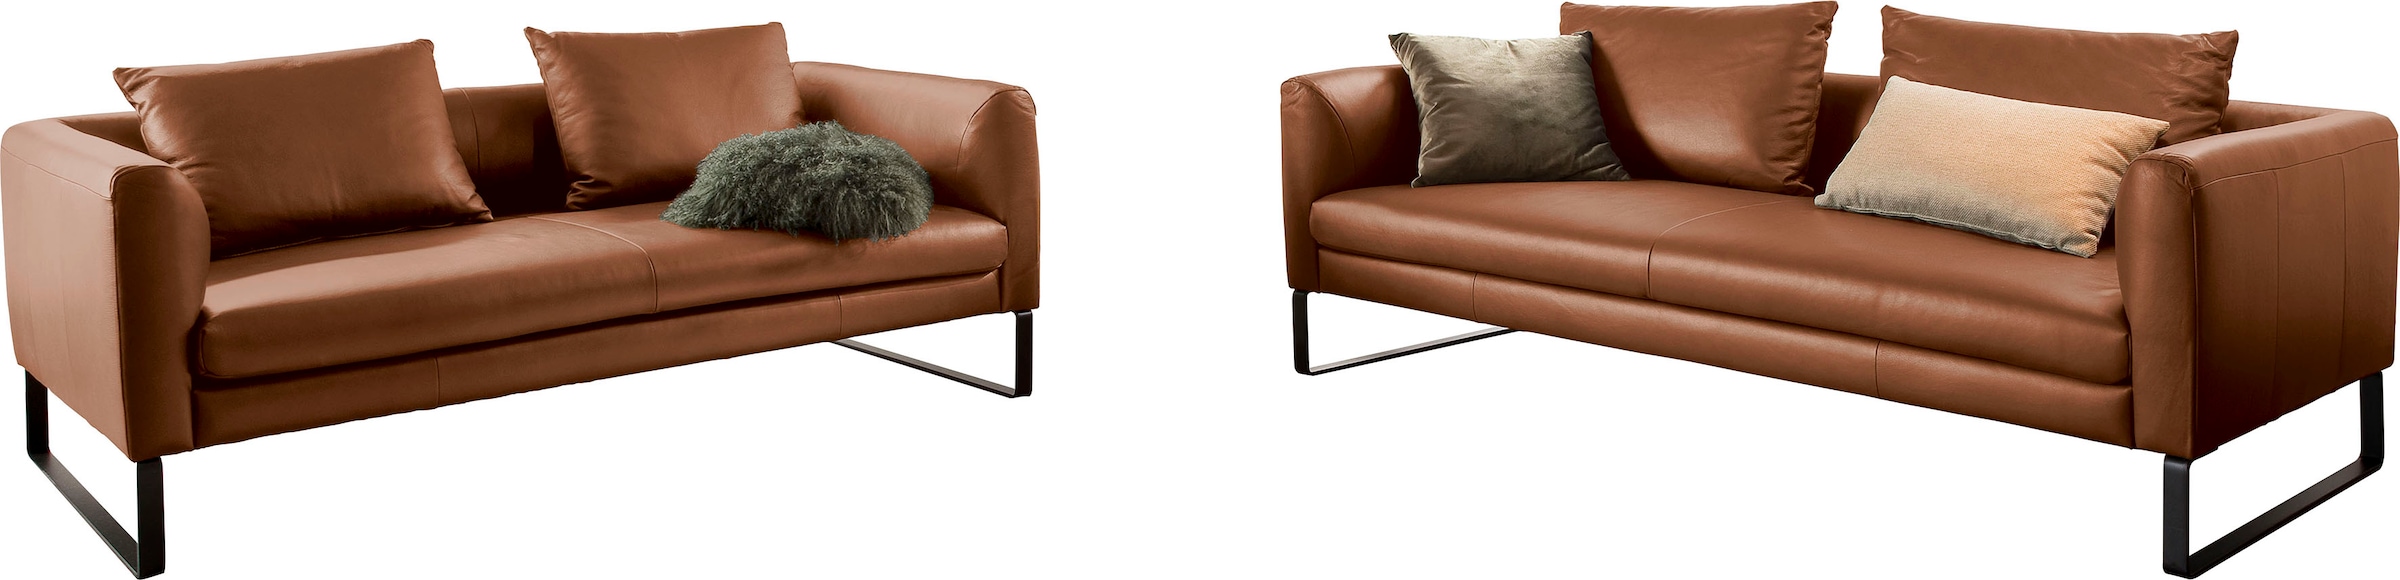 Sofa, Sofaset bestehend aus 2,5-Sitzer und 3-Sitzer